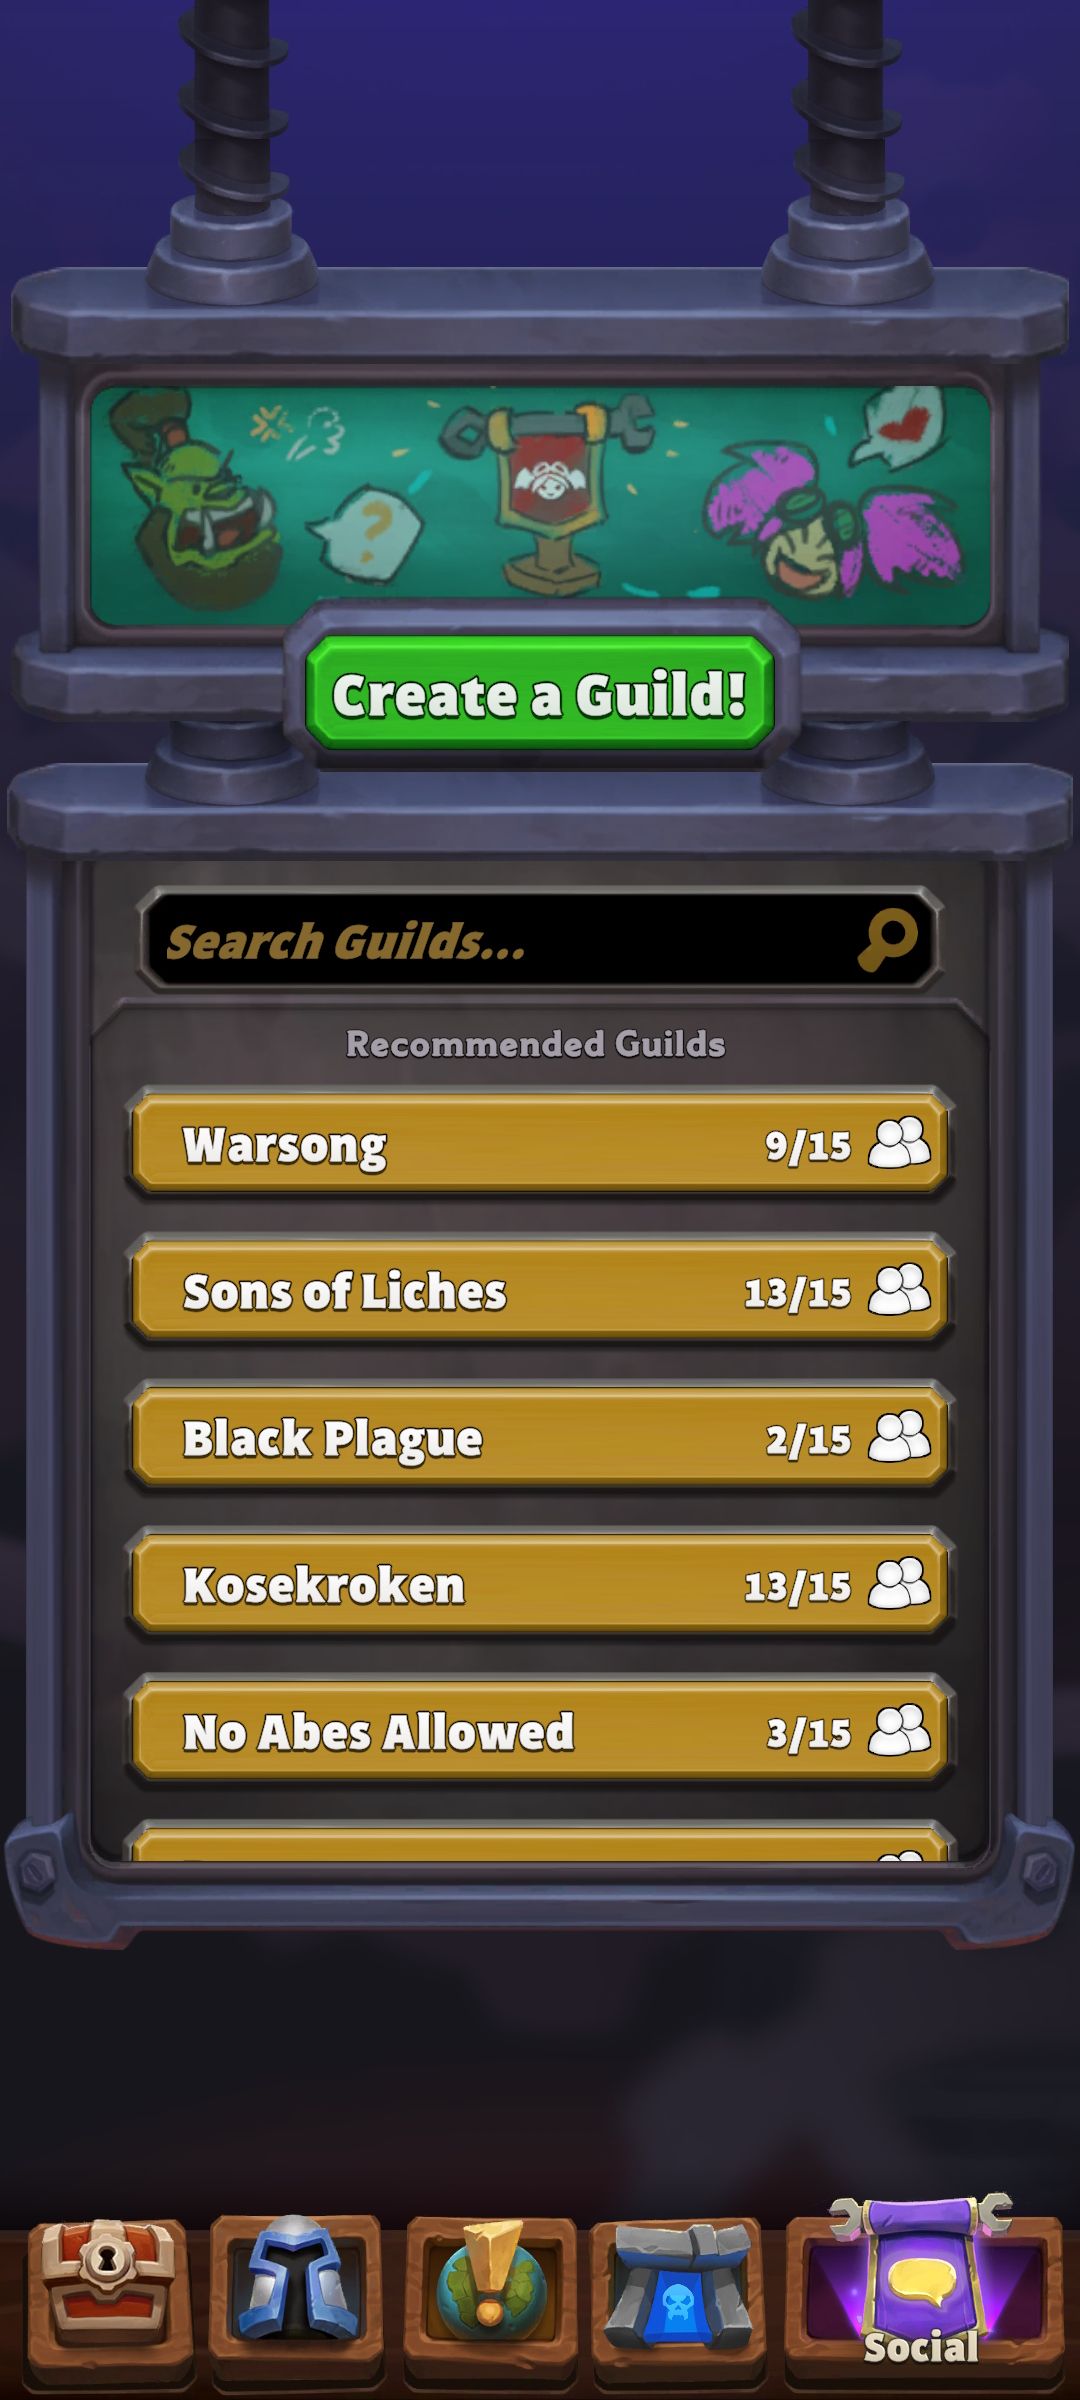 Tela de visão geral da guilda Warcraft nas redes sociais